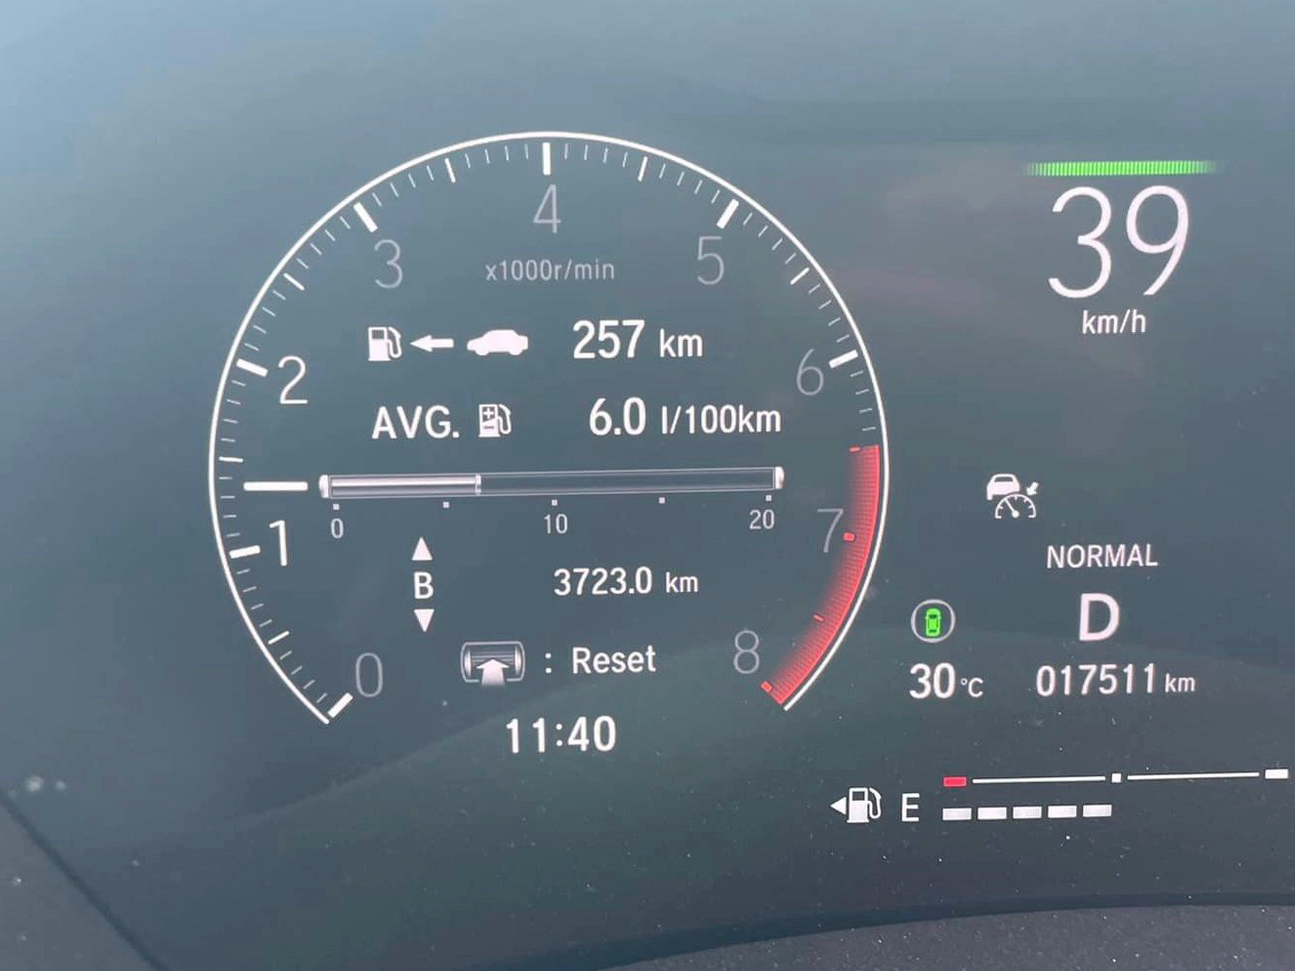 Tôi đổi Mazda3 lên Honda HR-V, lái 3.800km trong 7 ngày và thấy nó ồn không chịu được, nhưng càng đi càng sướng - Ảnh 3.